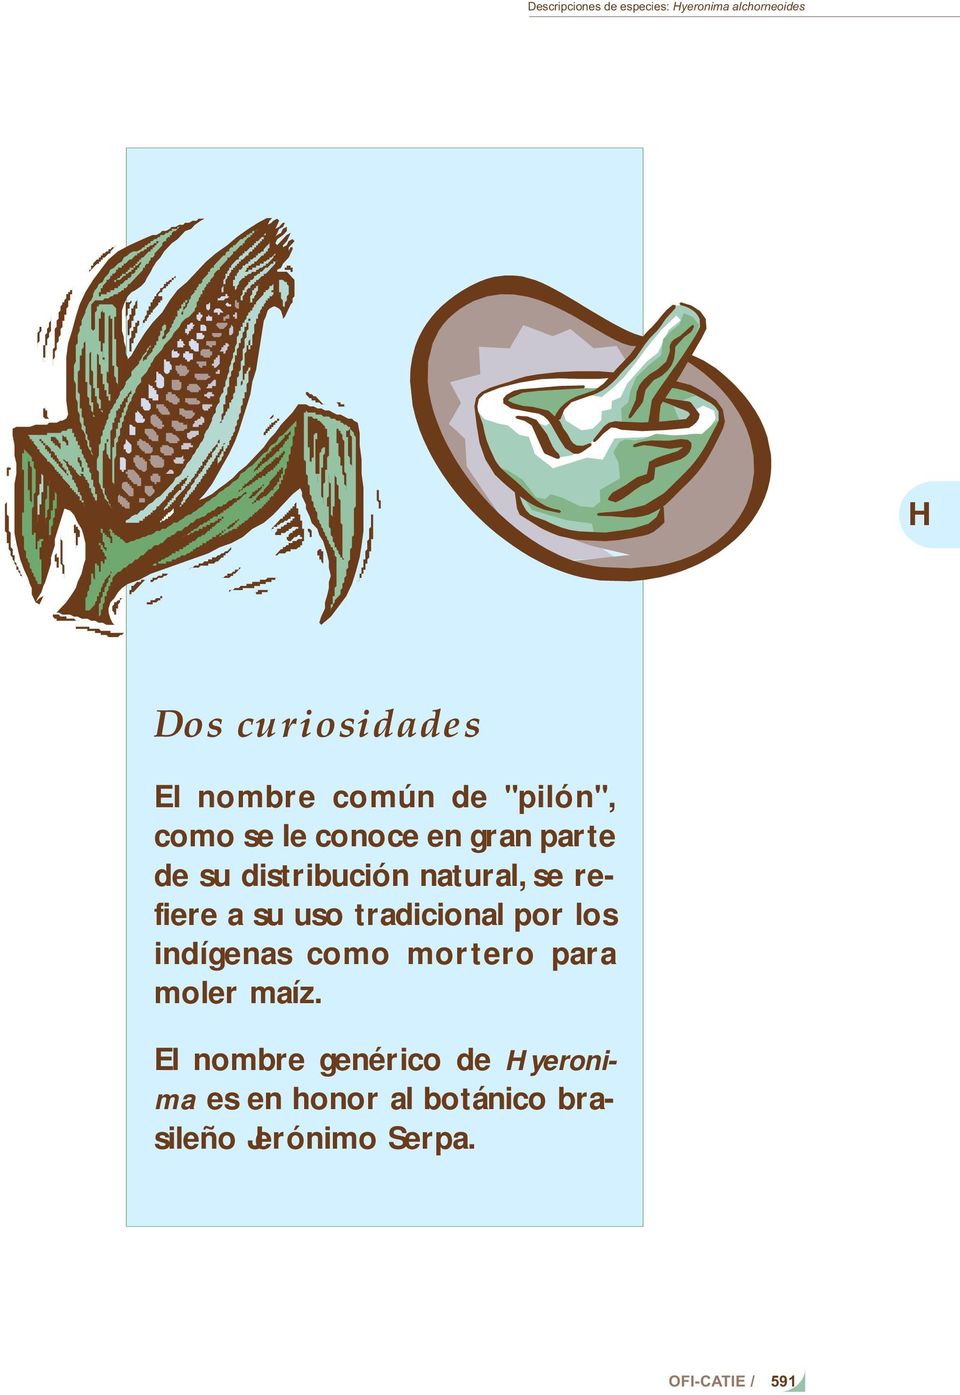 refiere a su uso tradicional por los indígenas como mortero para moler maíz.